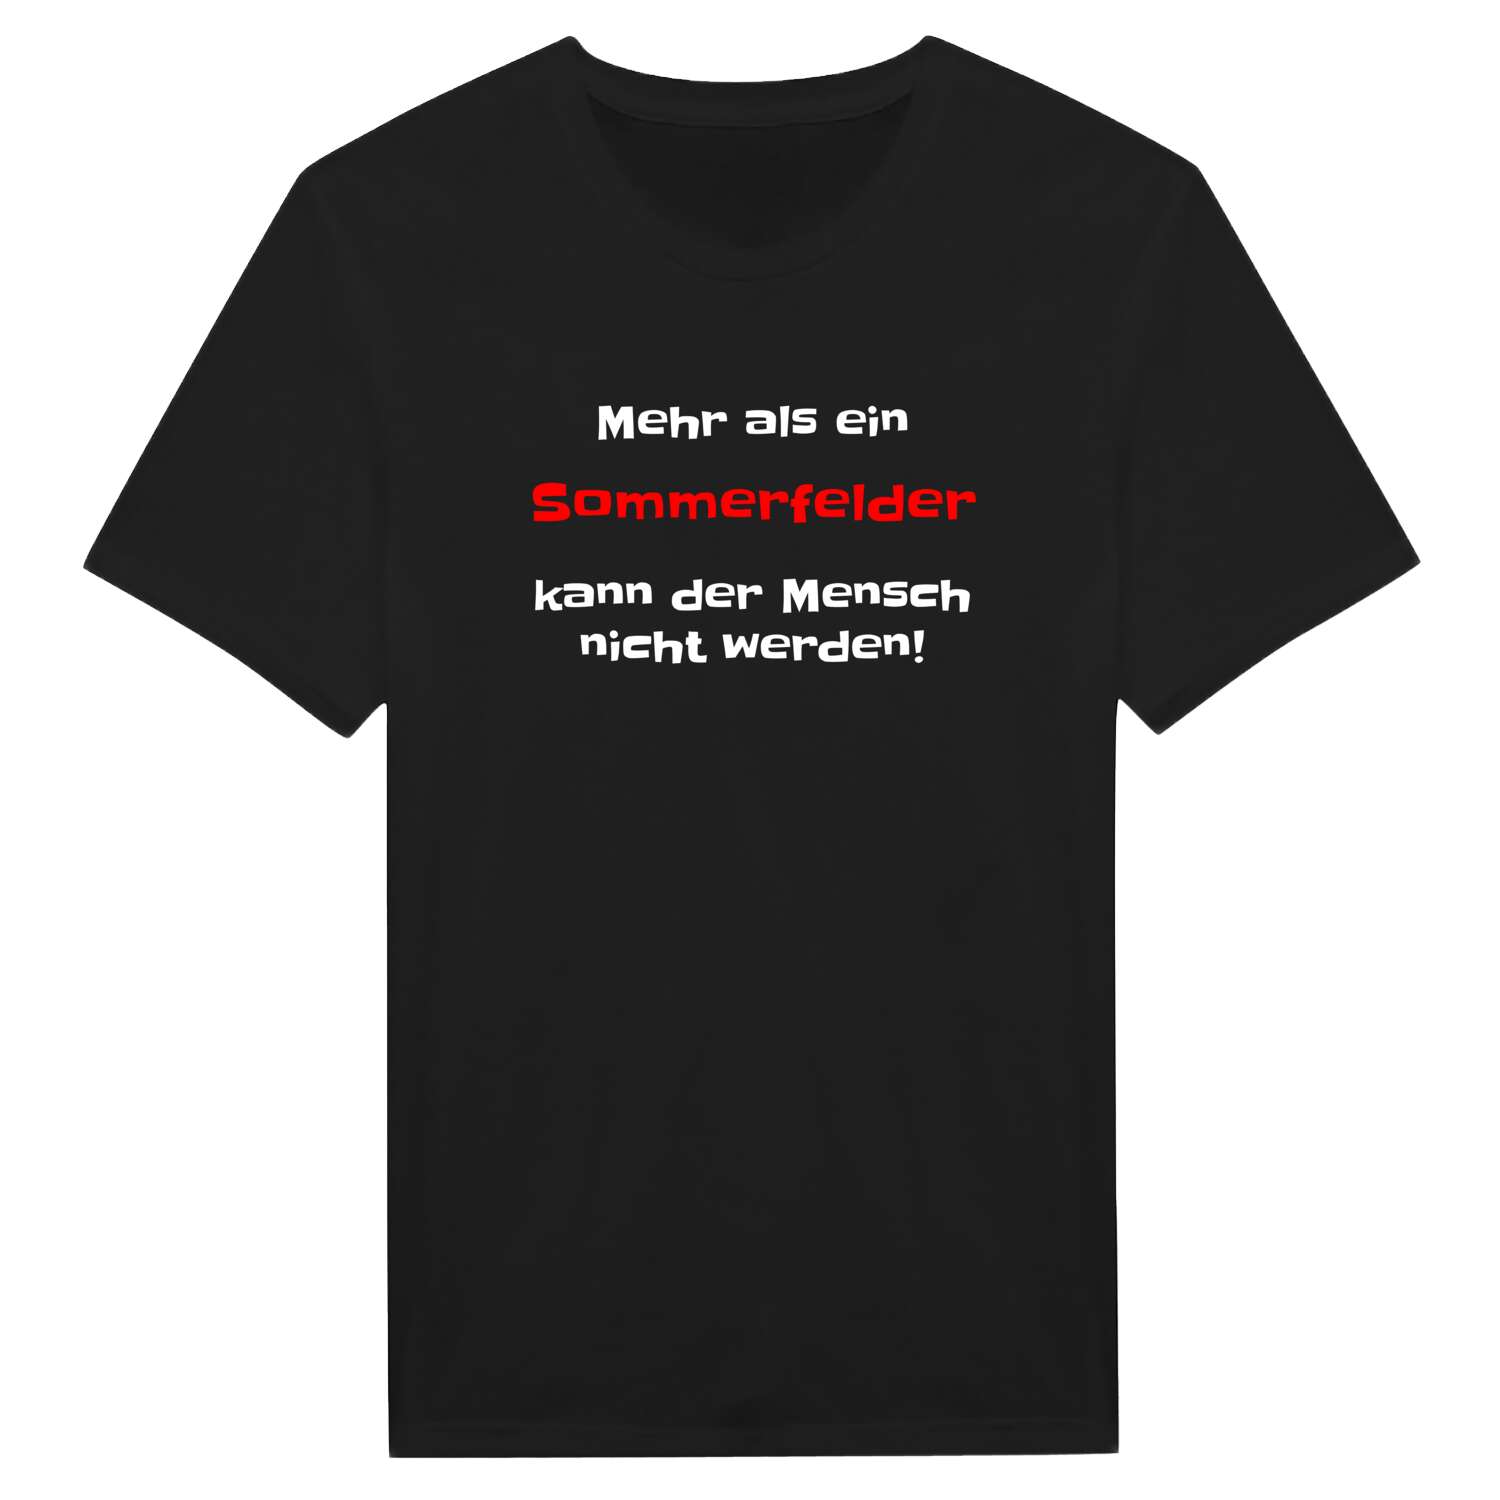 Sommerfeld T-Shirt »Mehr als ein«